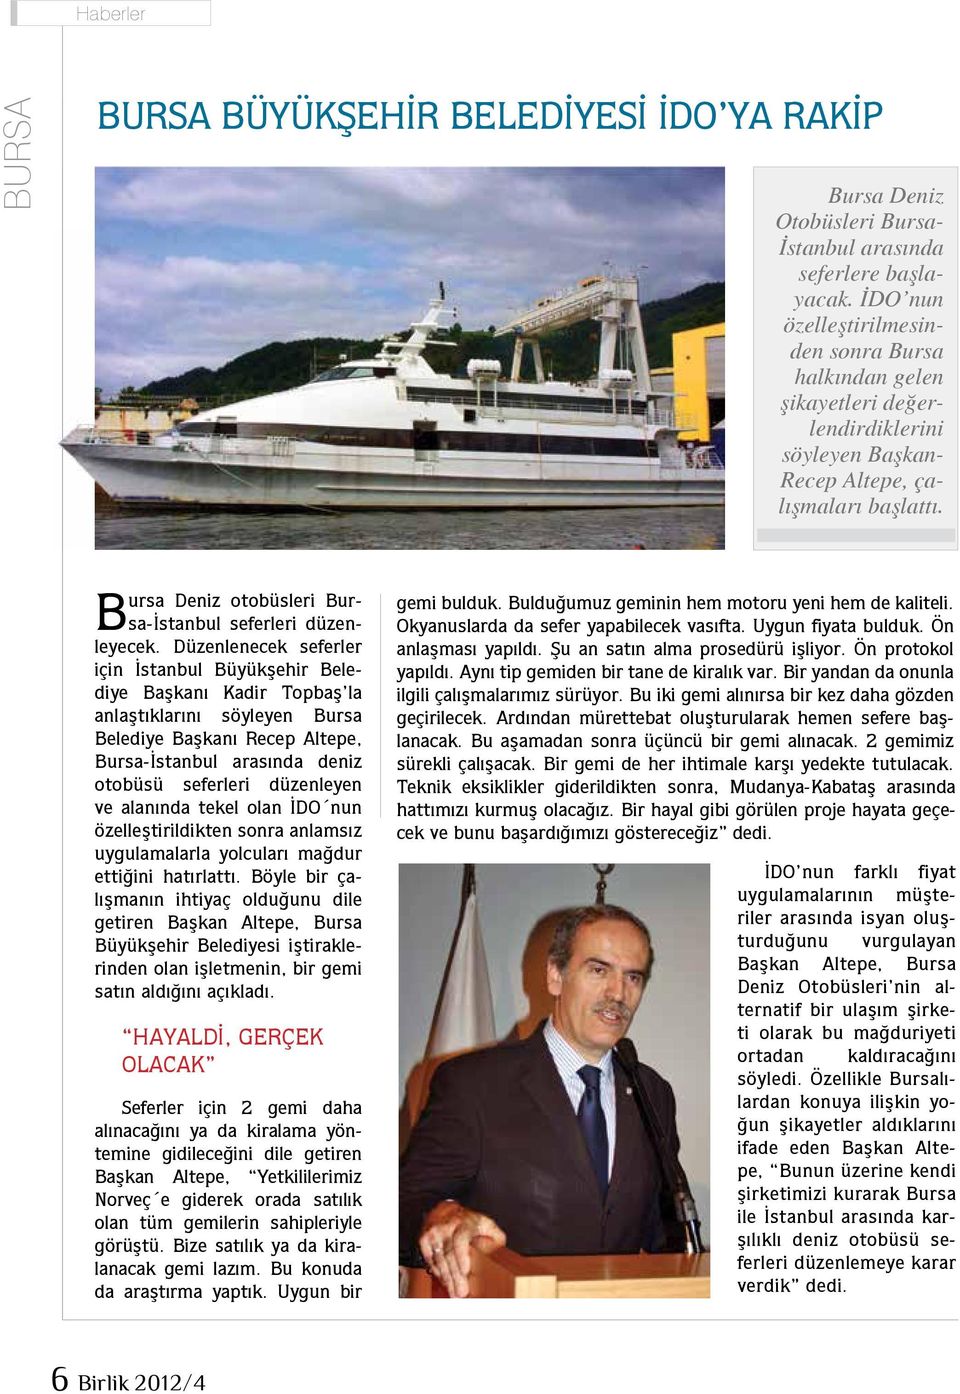 Bursa Deniz otobüsleri Bursa-İstanbul seferleri düzenleyecek.